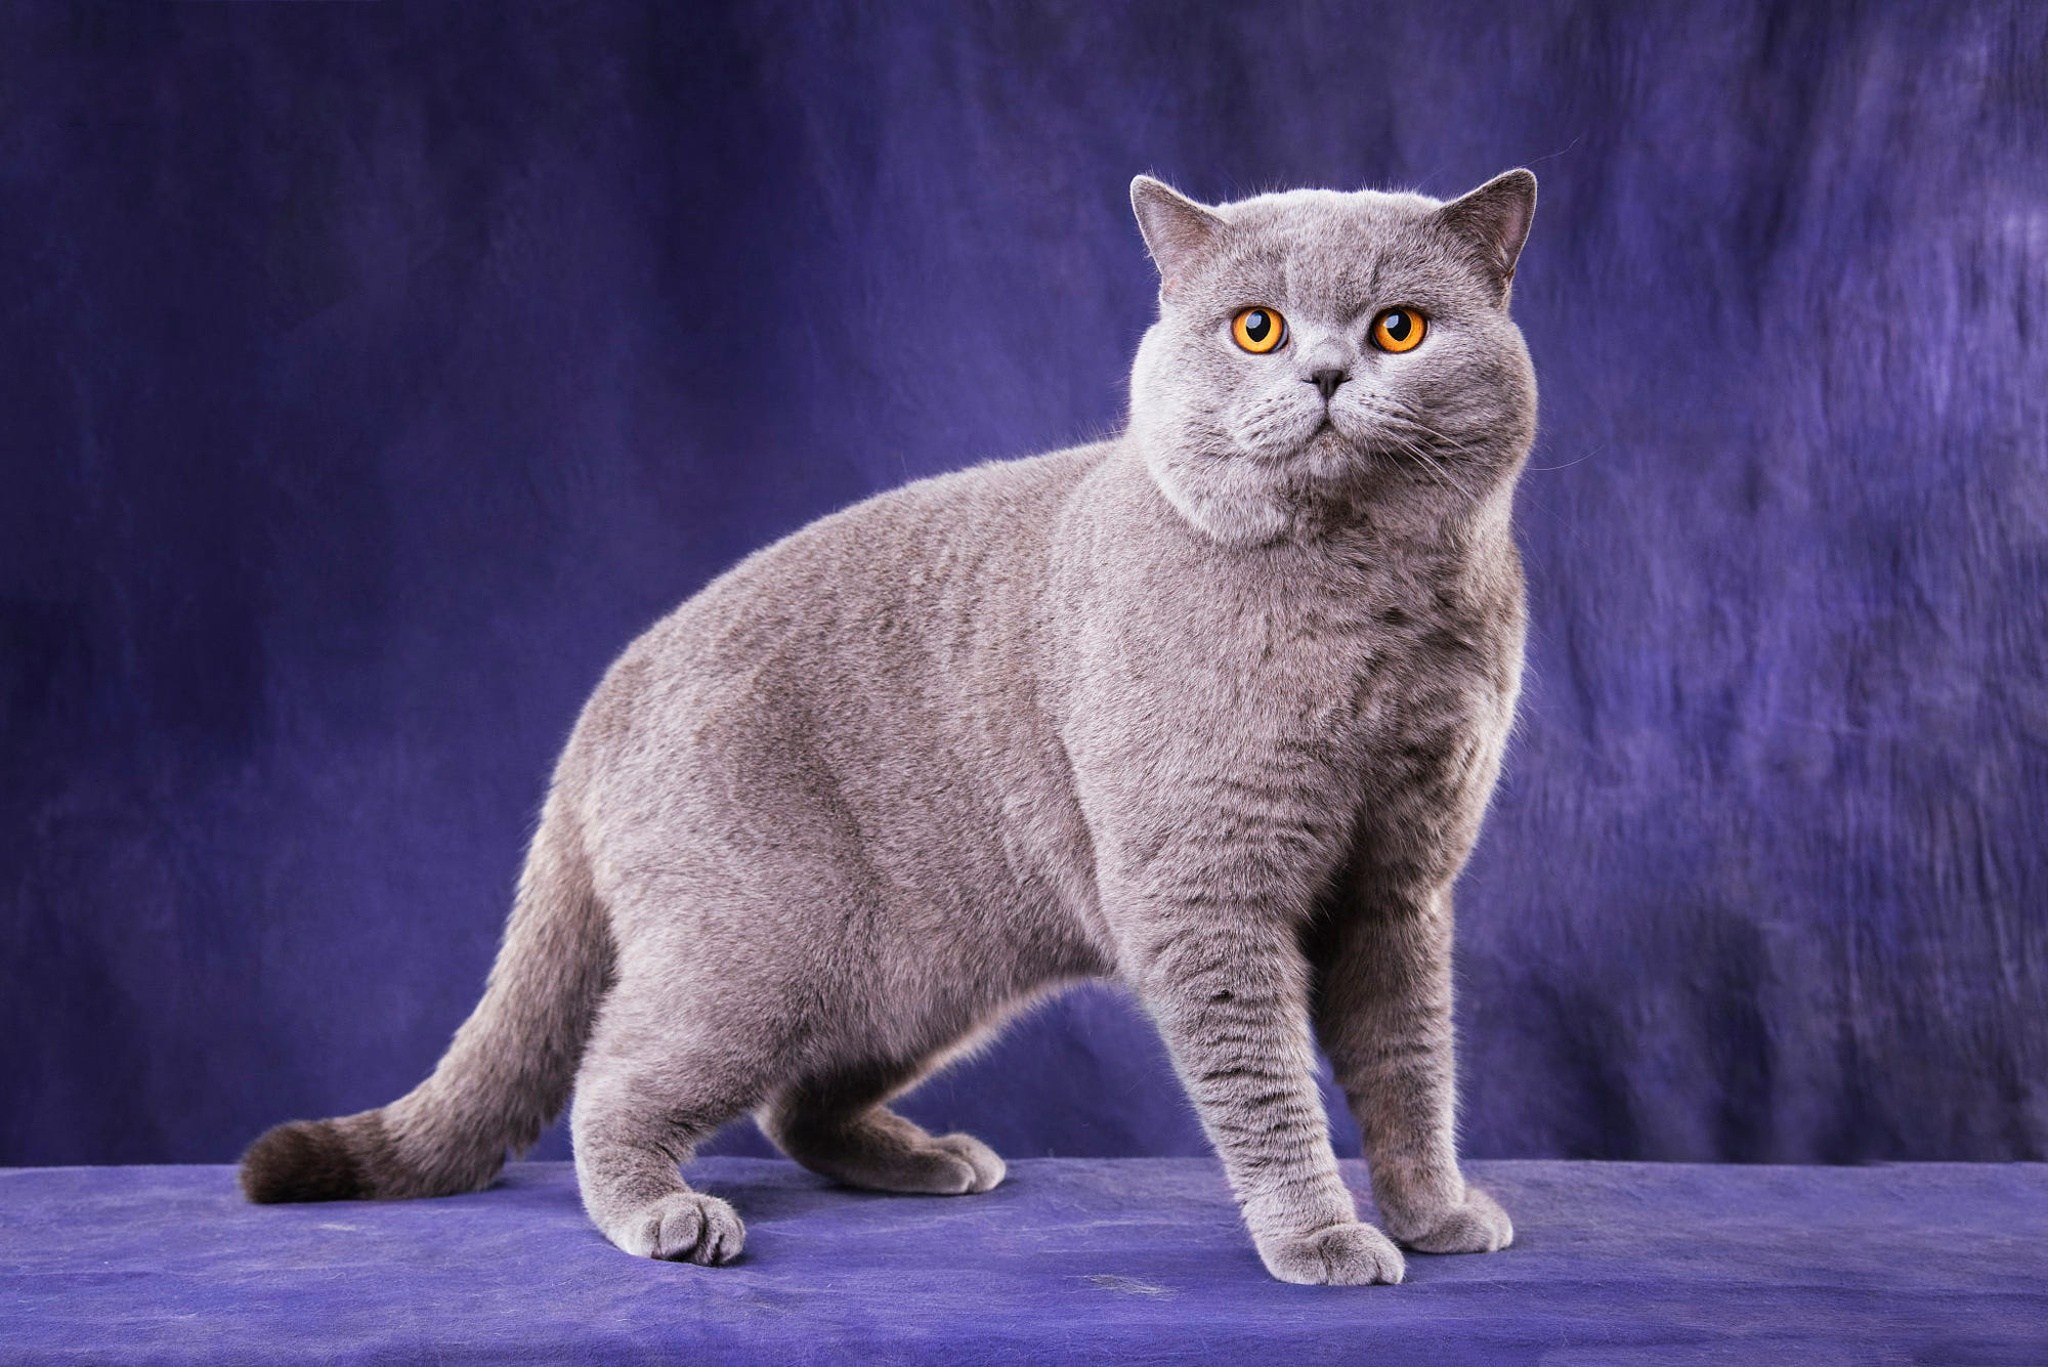 Фотографии породы британских кошек. Британская короткошёрстная кошка. Британская короткошёрстная кошка шартрез. Порода Бритиш Шортхэйр. Британский короткошерстный кот серый.